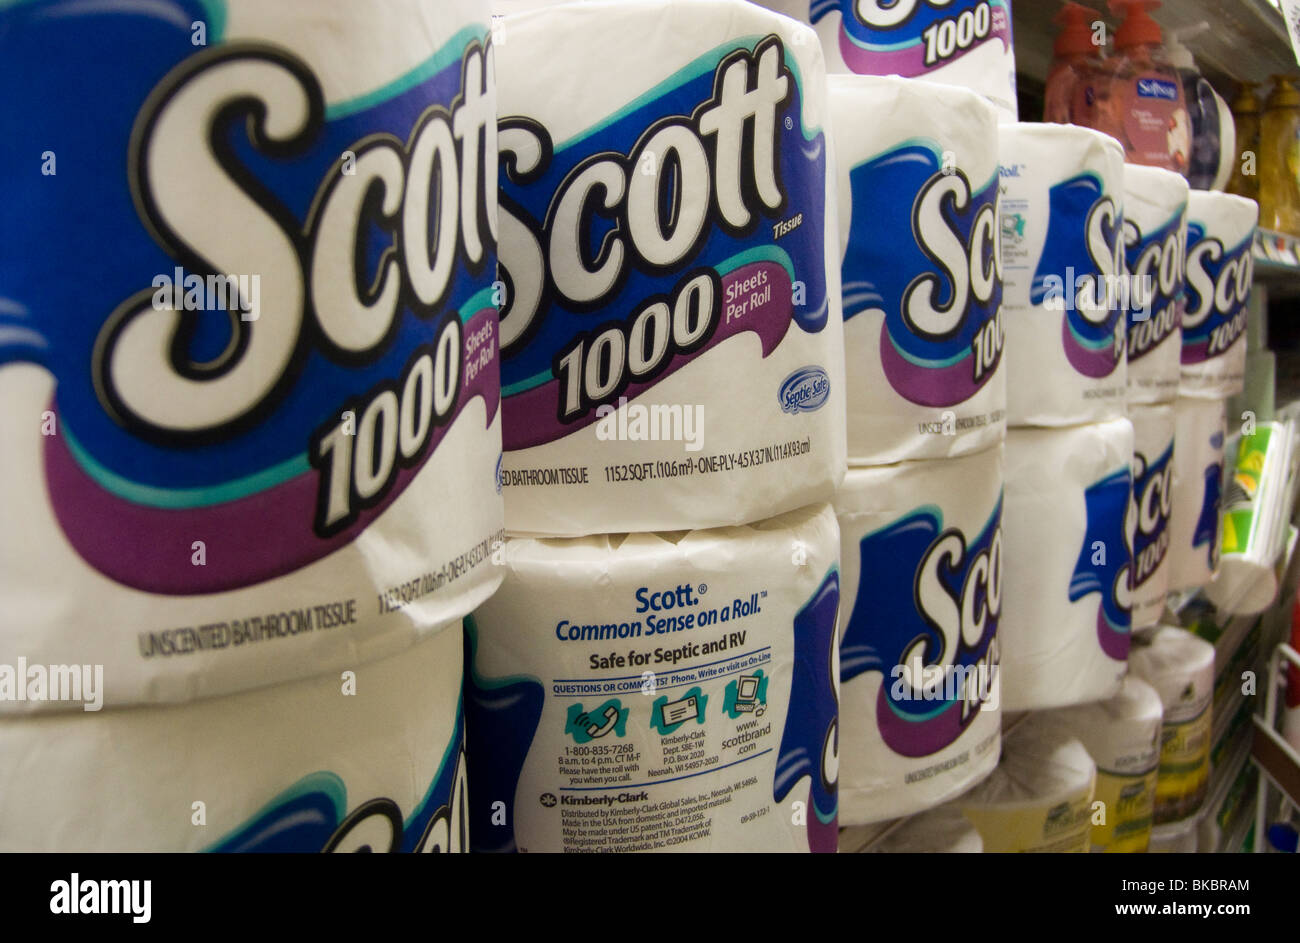 Rollen von Scott Toilettenpapier hergestellt von Kimberly-Clark sind auf  einem Supermarktregal in New York gesehen Stockfotografie - Alamy